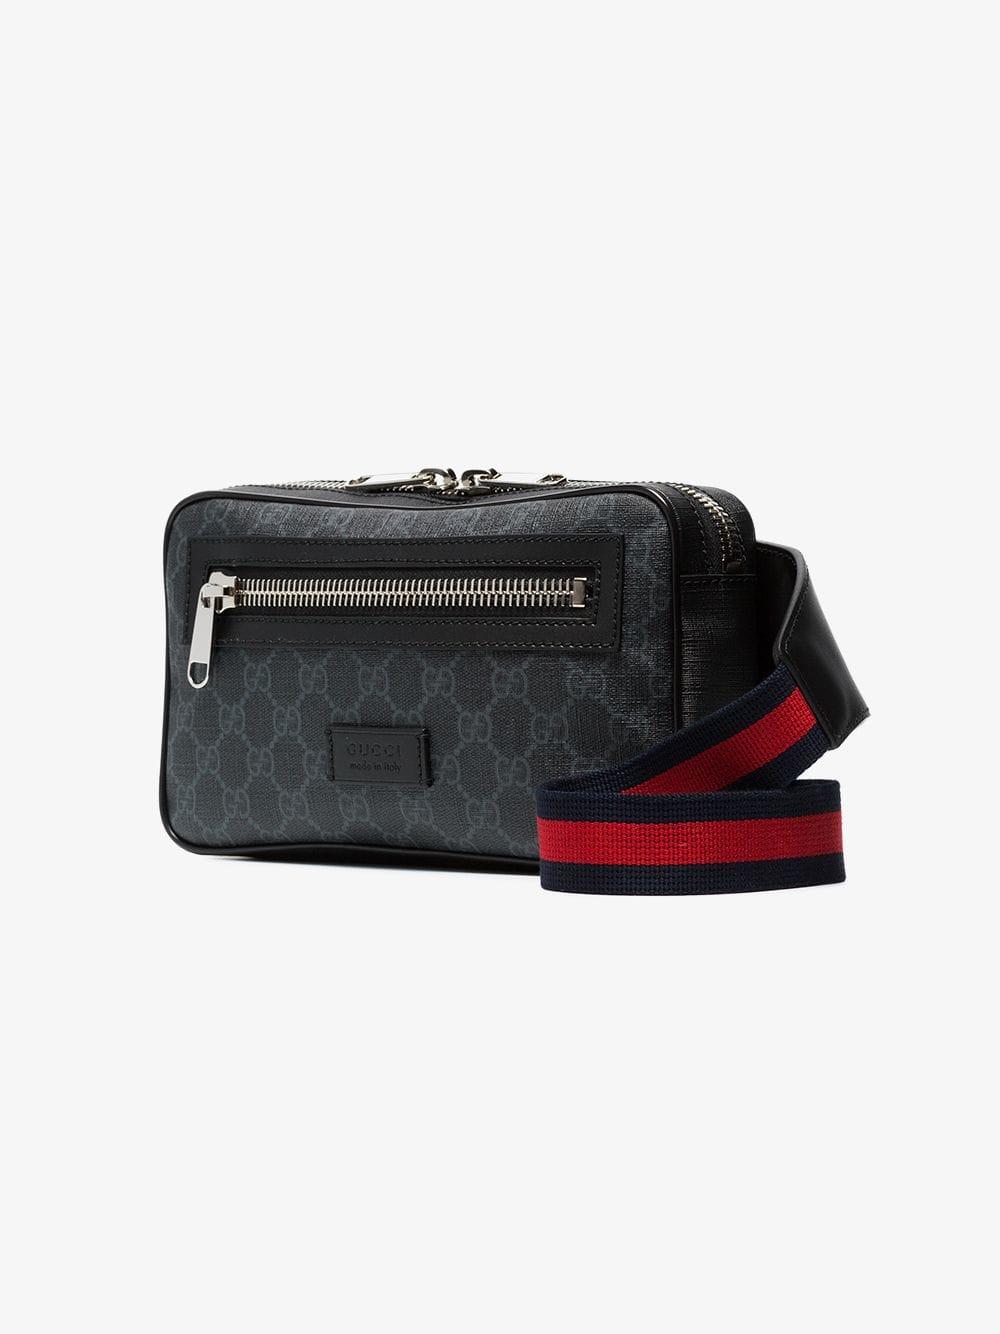 Gucci Leather Soft GG Supreme Belt Bag in Black for Men - Lyst